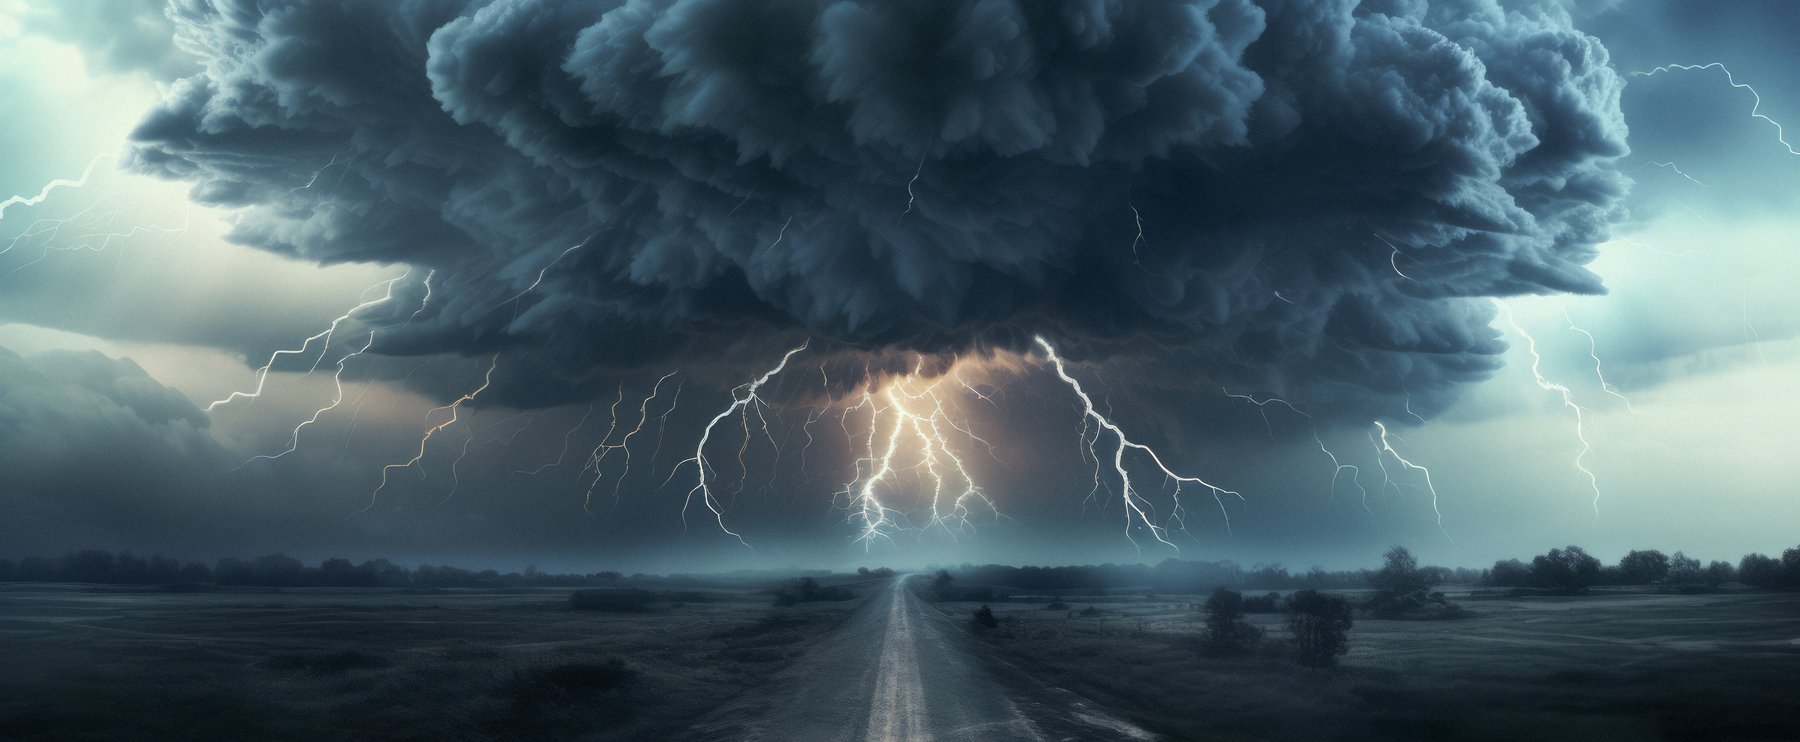 Pusztító viharciklon jelent meg a meteorológusok radarján, Magyarország is veszélyben van?